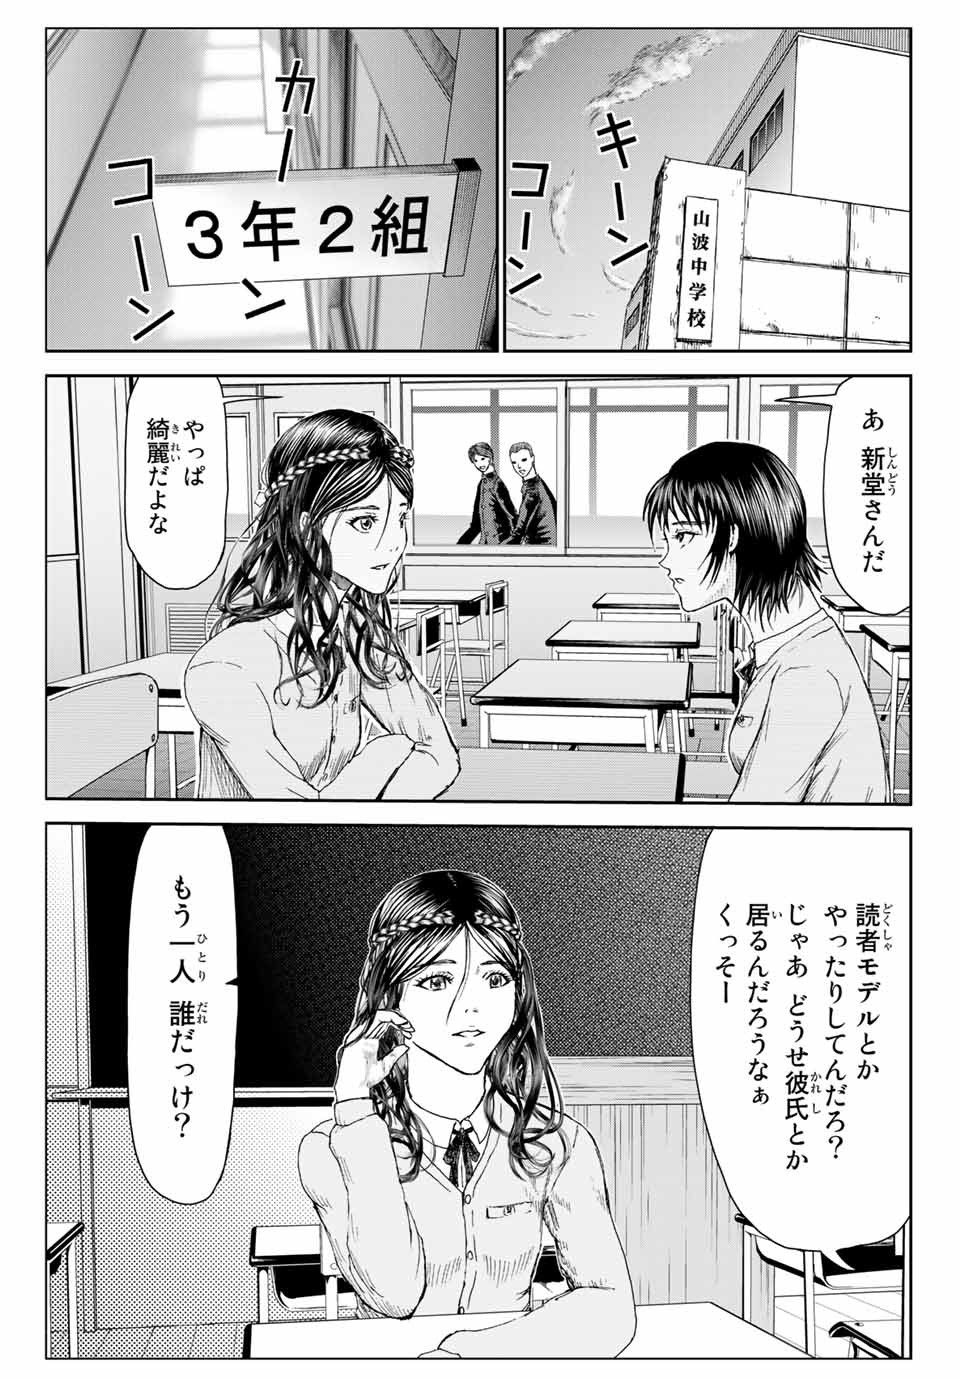 100-man no Inochi no Ue ni Ore wa Tatte Iru - Chapter 51.6 - Page 1